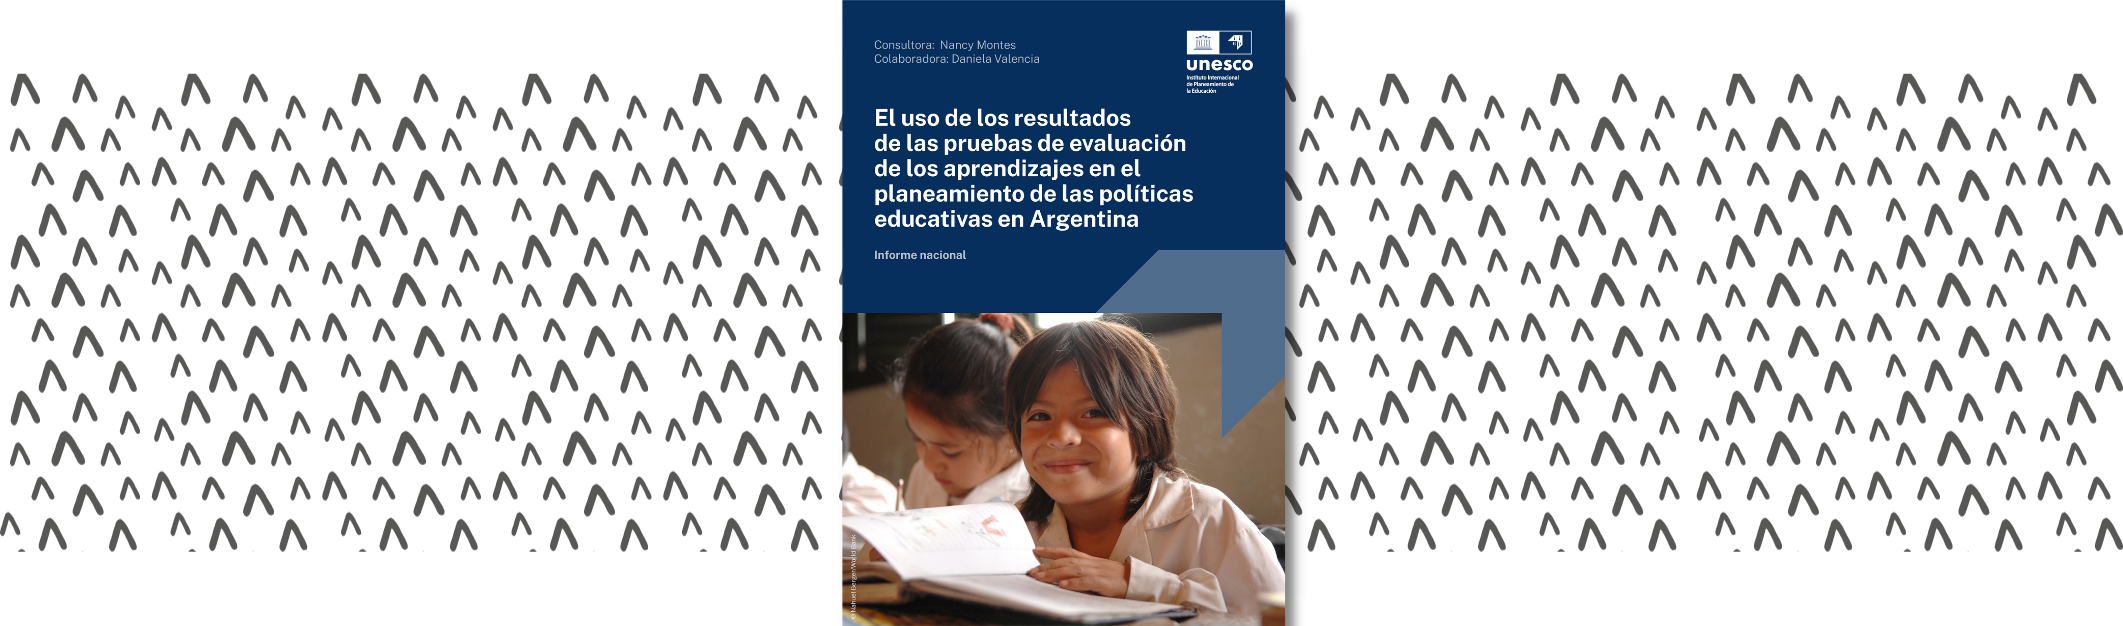 El uso de los resultados de las pruebas de evaluación de los aprendizajes en el planeamiento de las políticas educativas en Argentina. Informe nacional